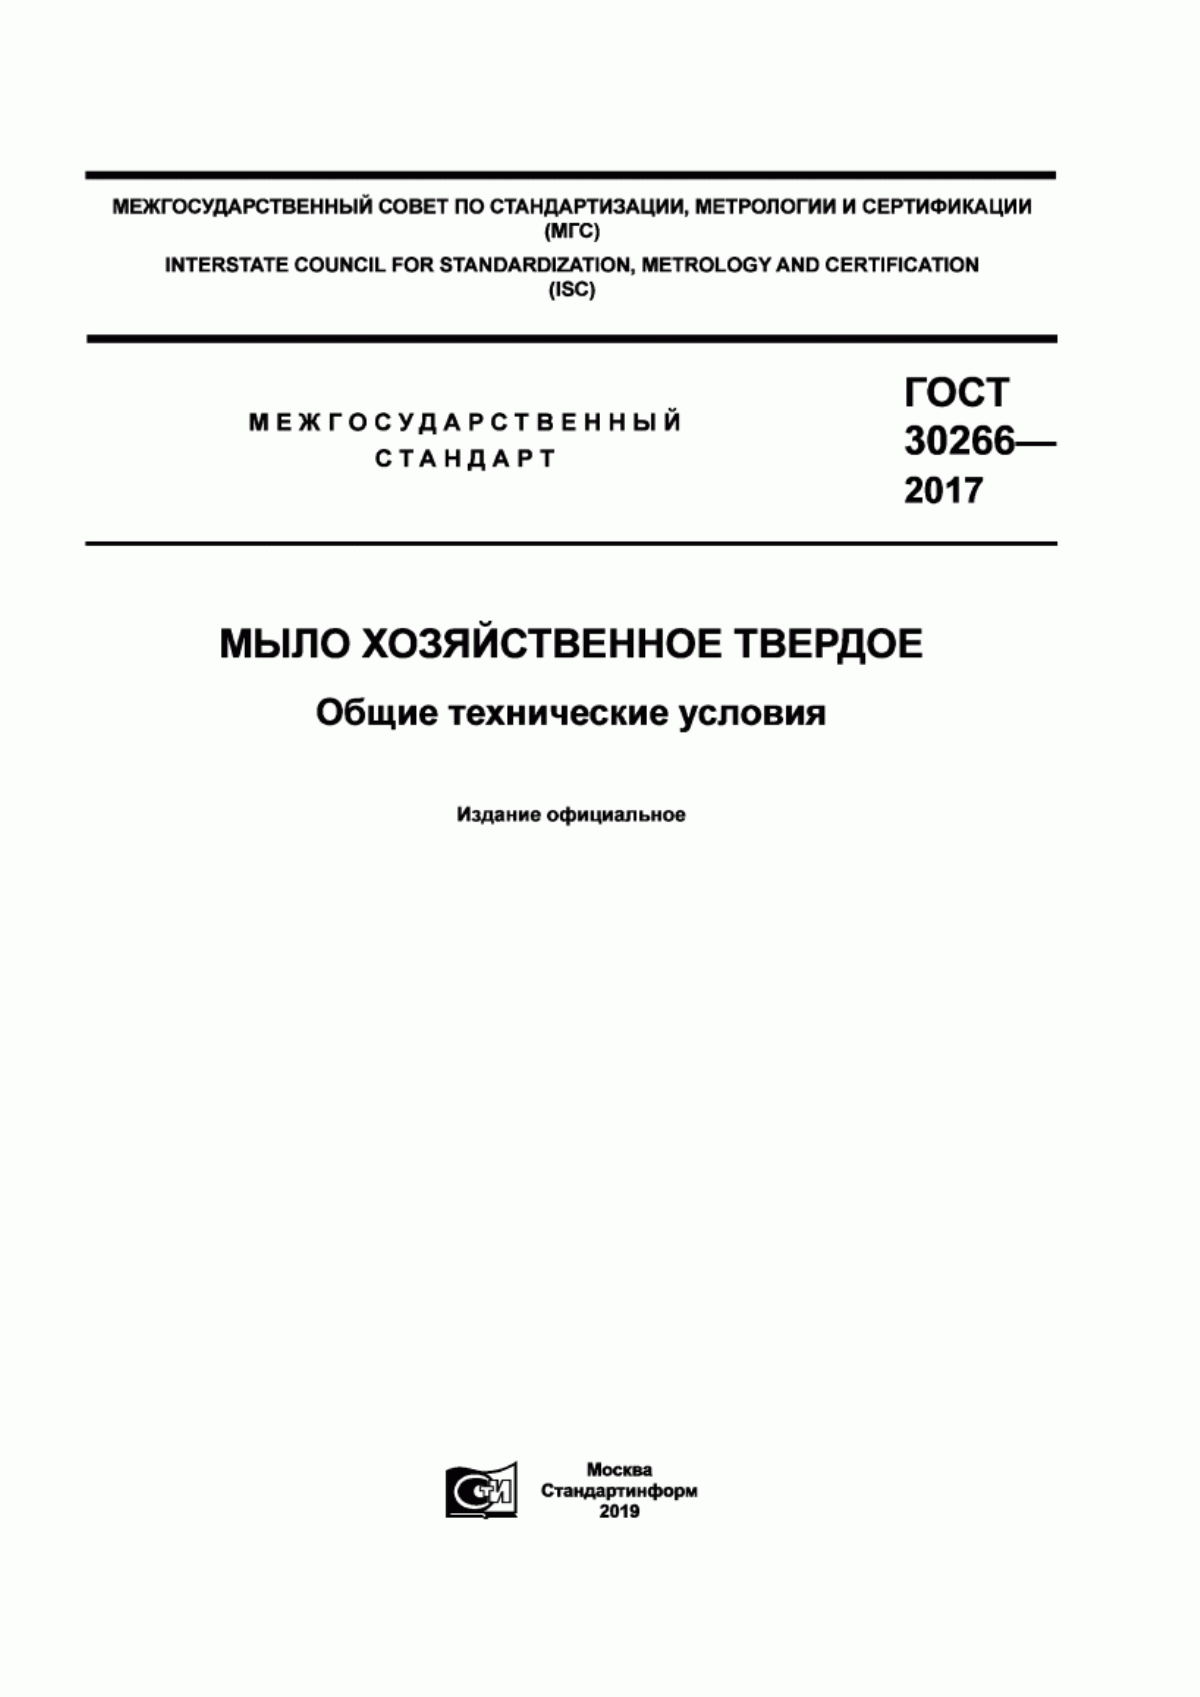 ГОСТ 30266-2017 Мыло хозяйственное твердое. Общие технические условия